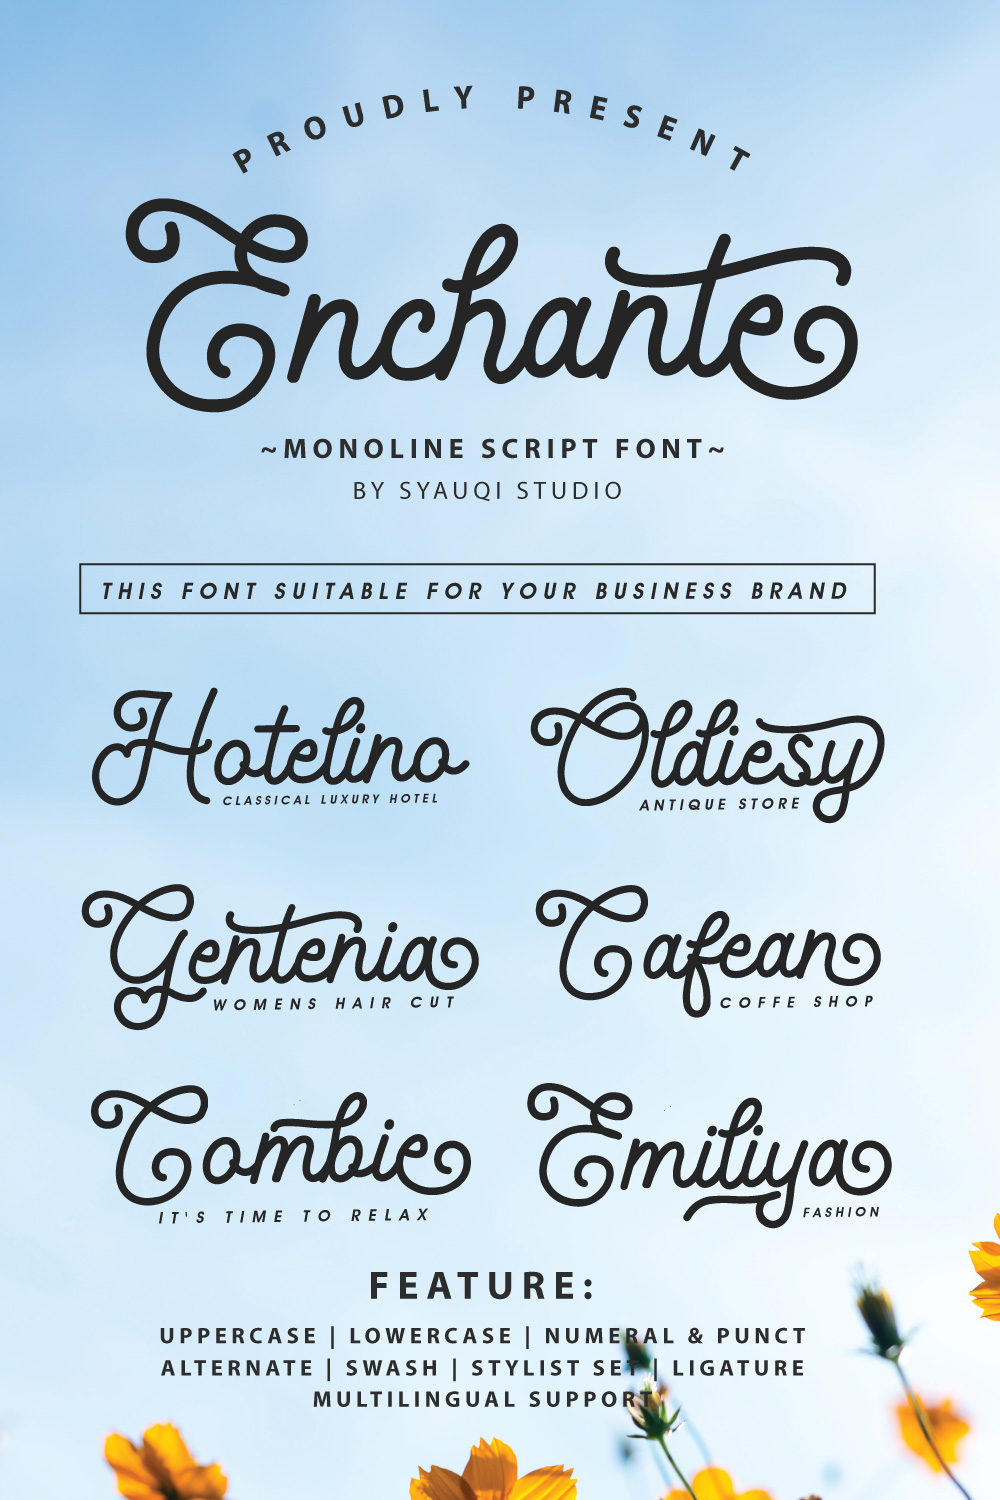 Enchante, A Monoline Script Font pinterest preview image.